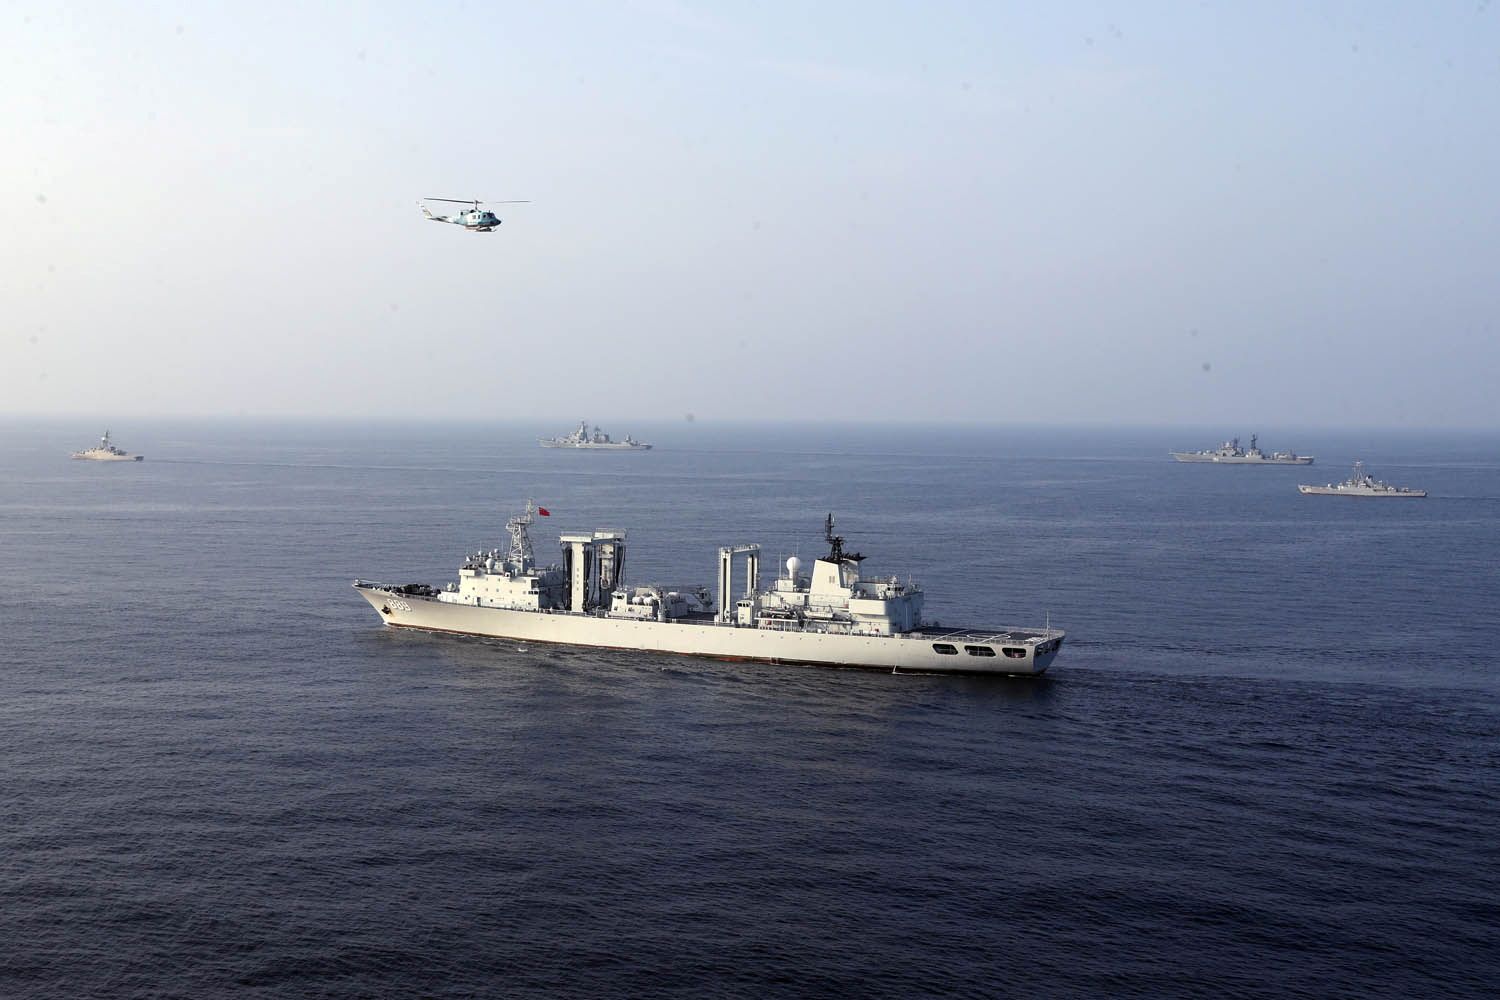 سفن حربية تشارك في تمرين بحري مشترك للبحرية الصينية والروسية والإيرانية في شمال المحيط الهندي، 19 يناير 2022 - via REUTERS